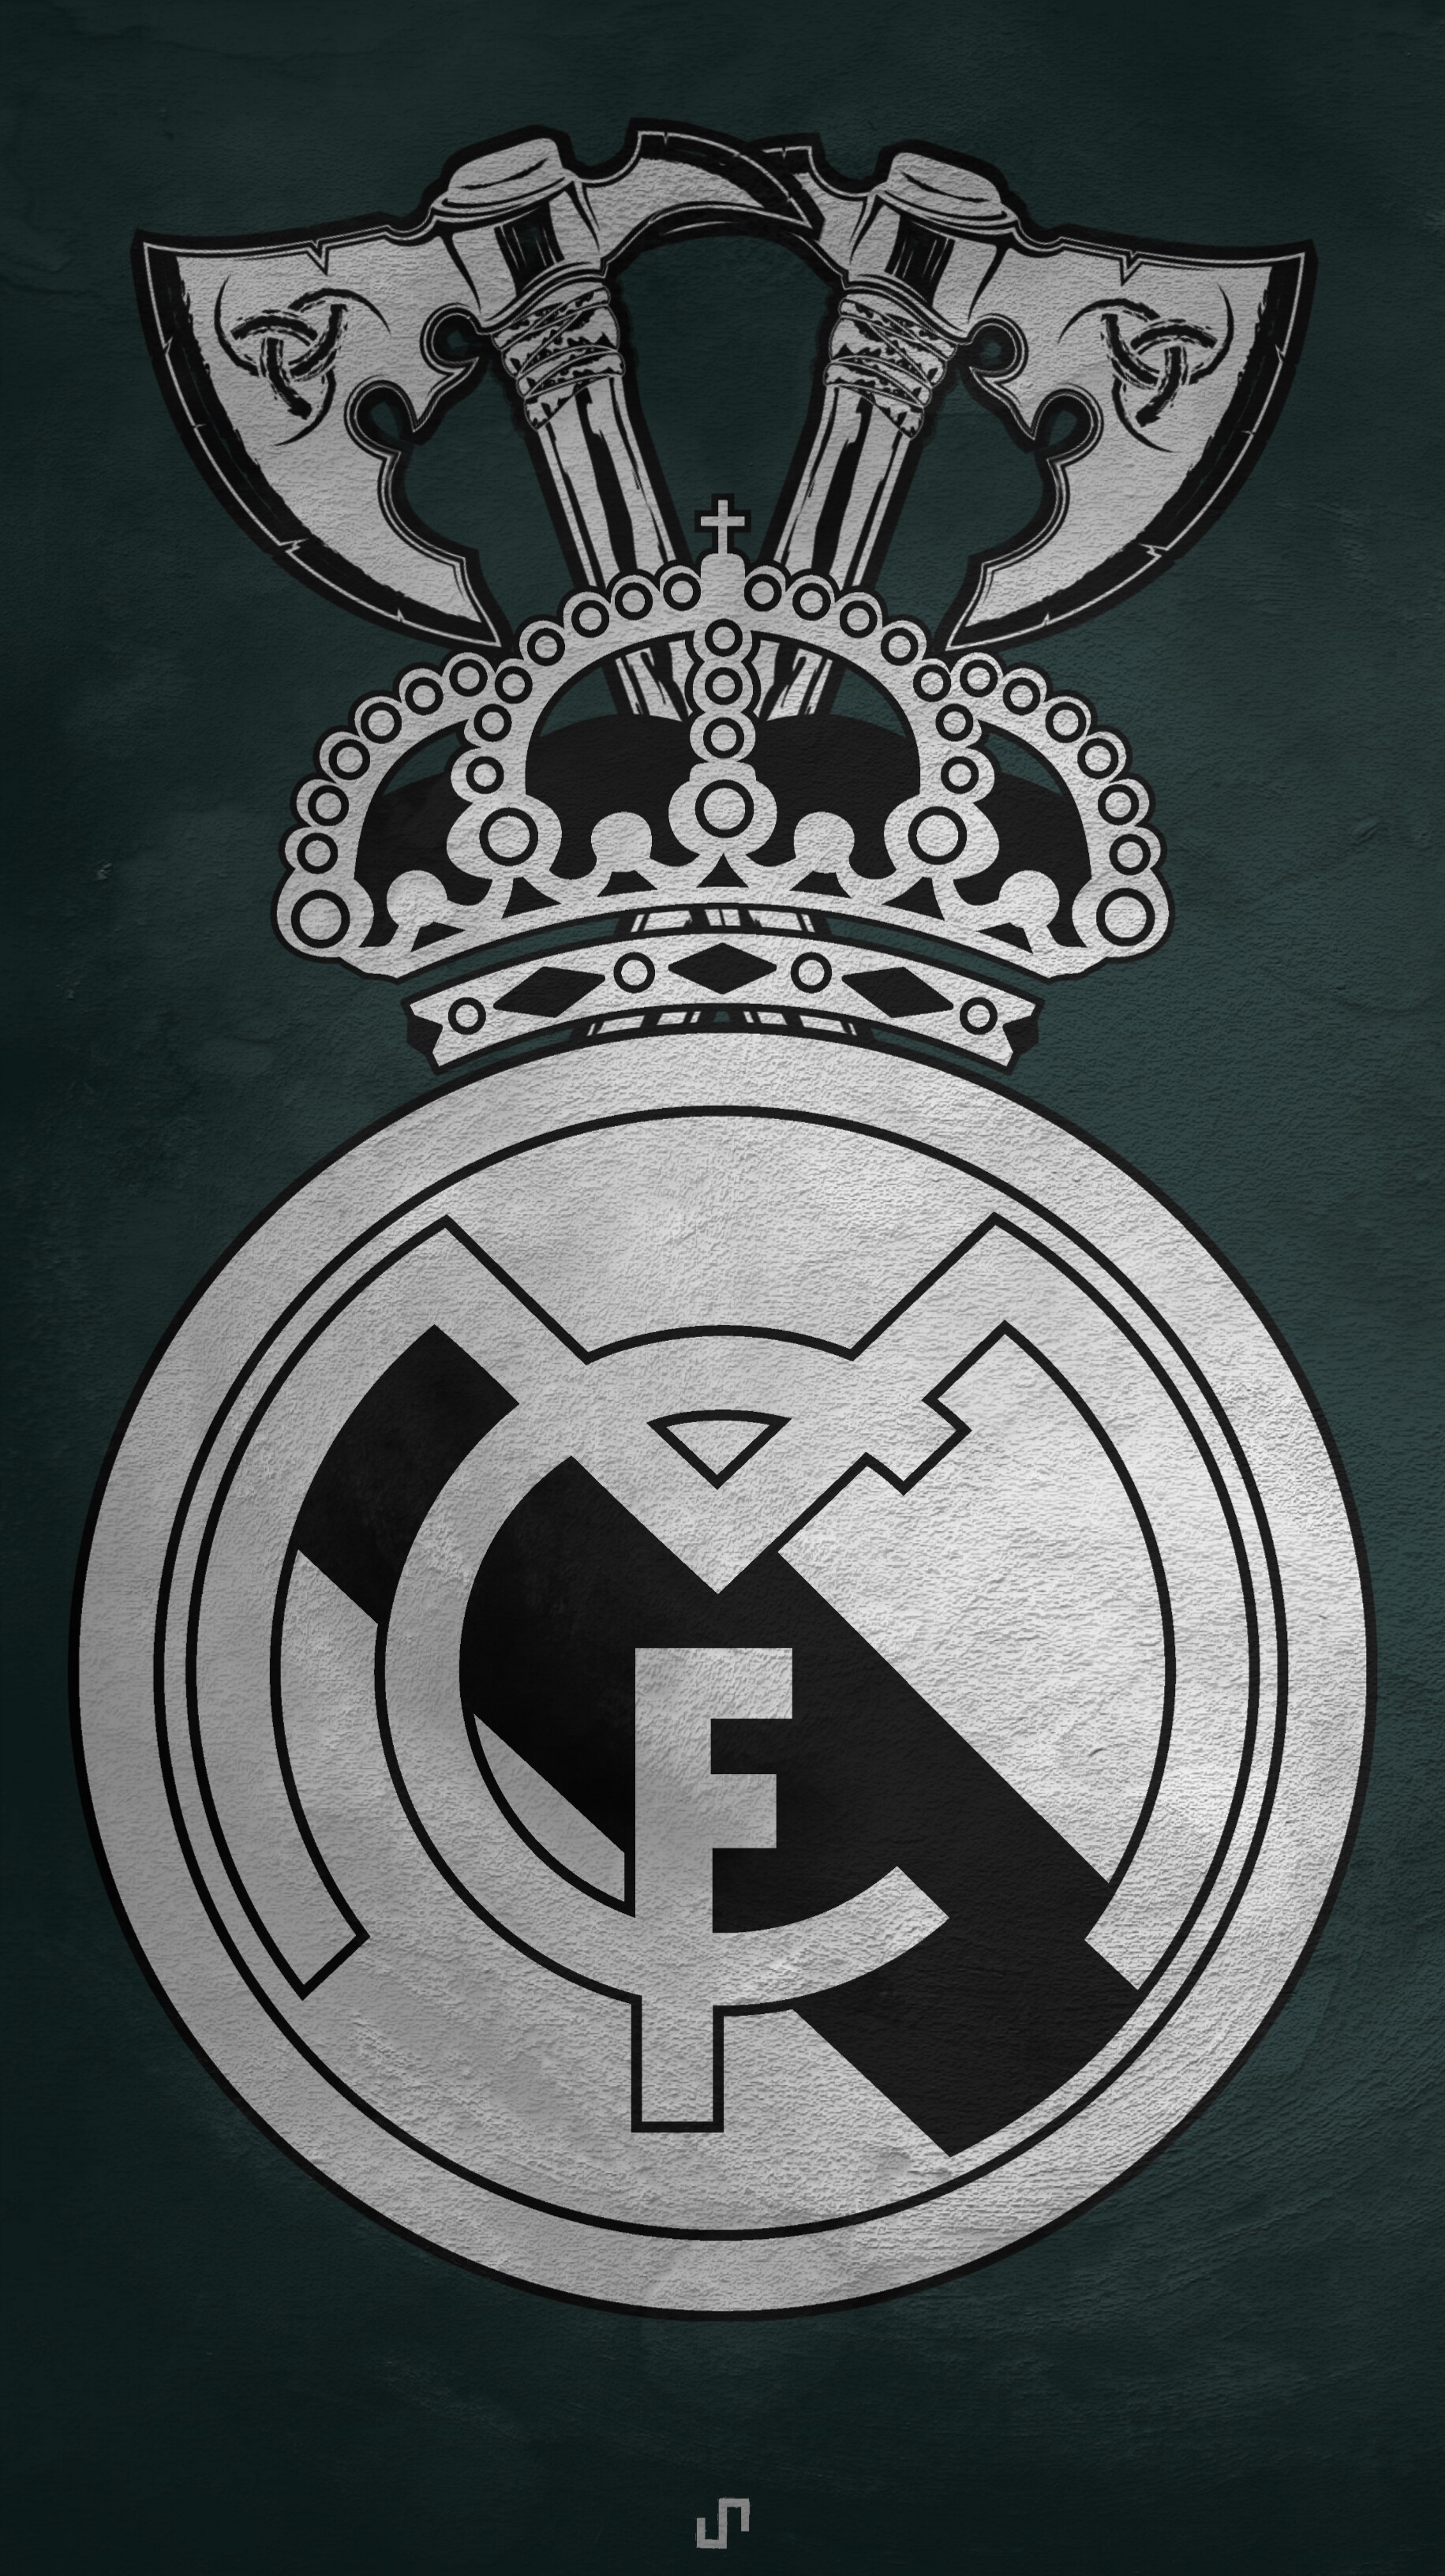 ArtStation - Real Madrid Wallpaper